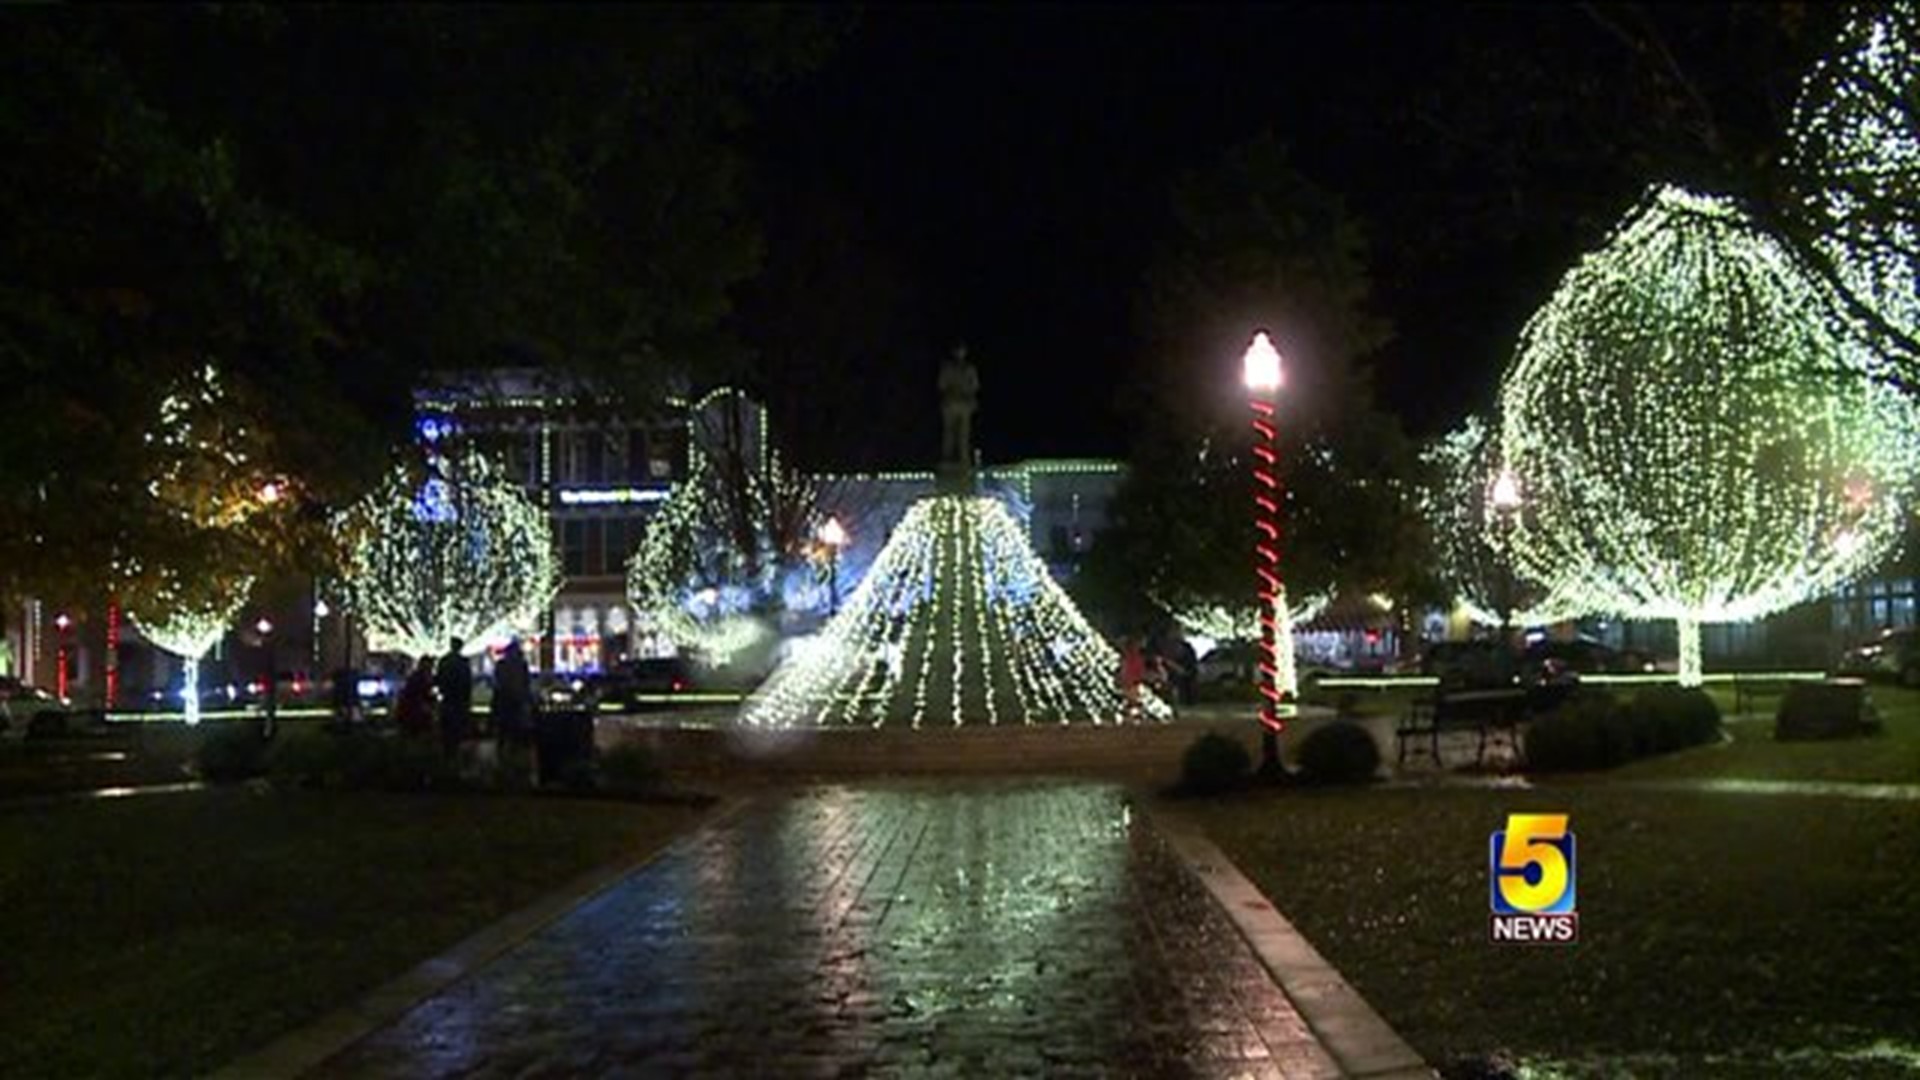 Bentonville Square Lights Up Despite Bad Weather